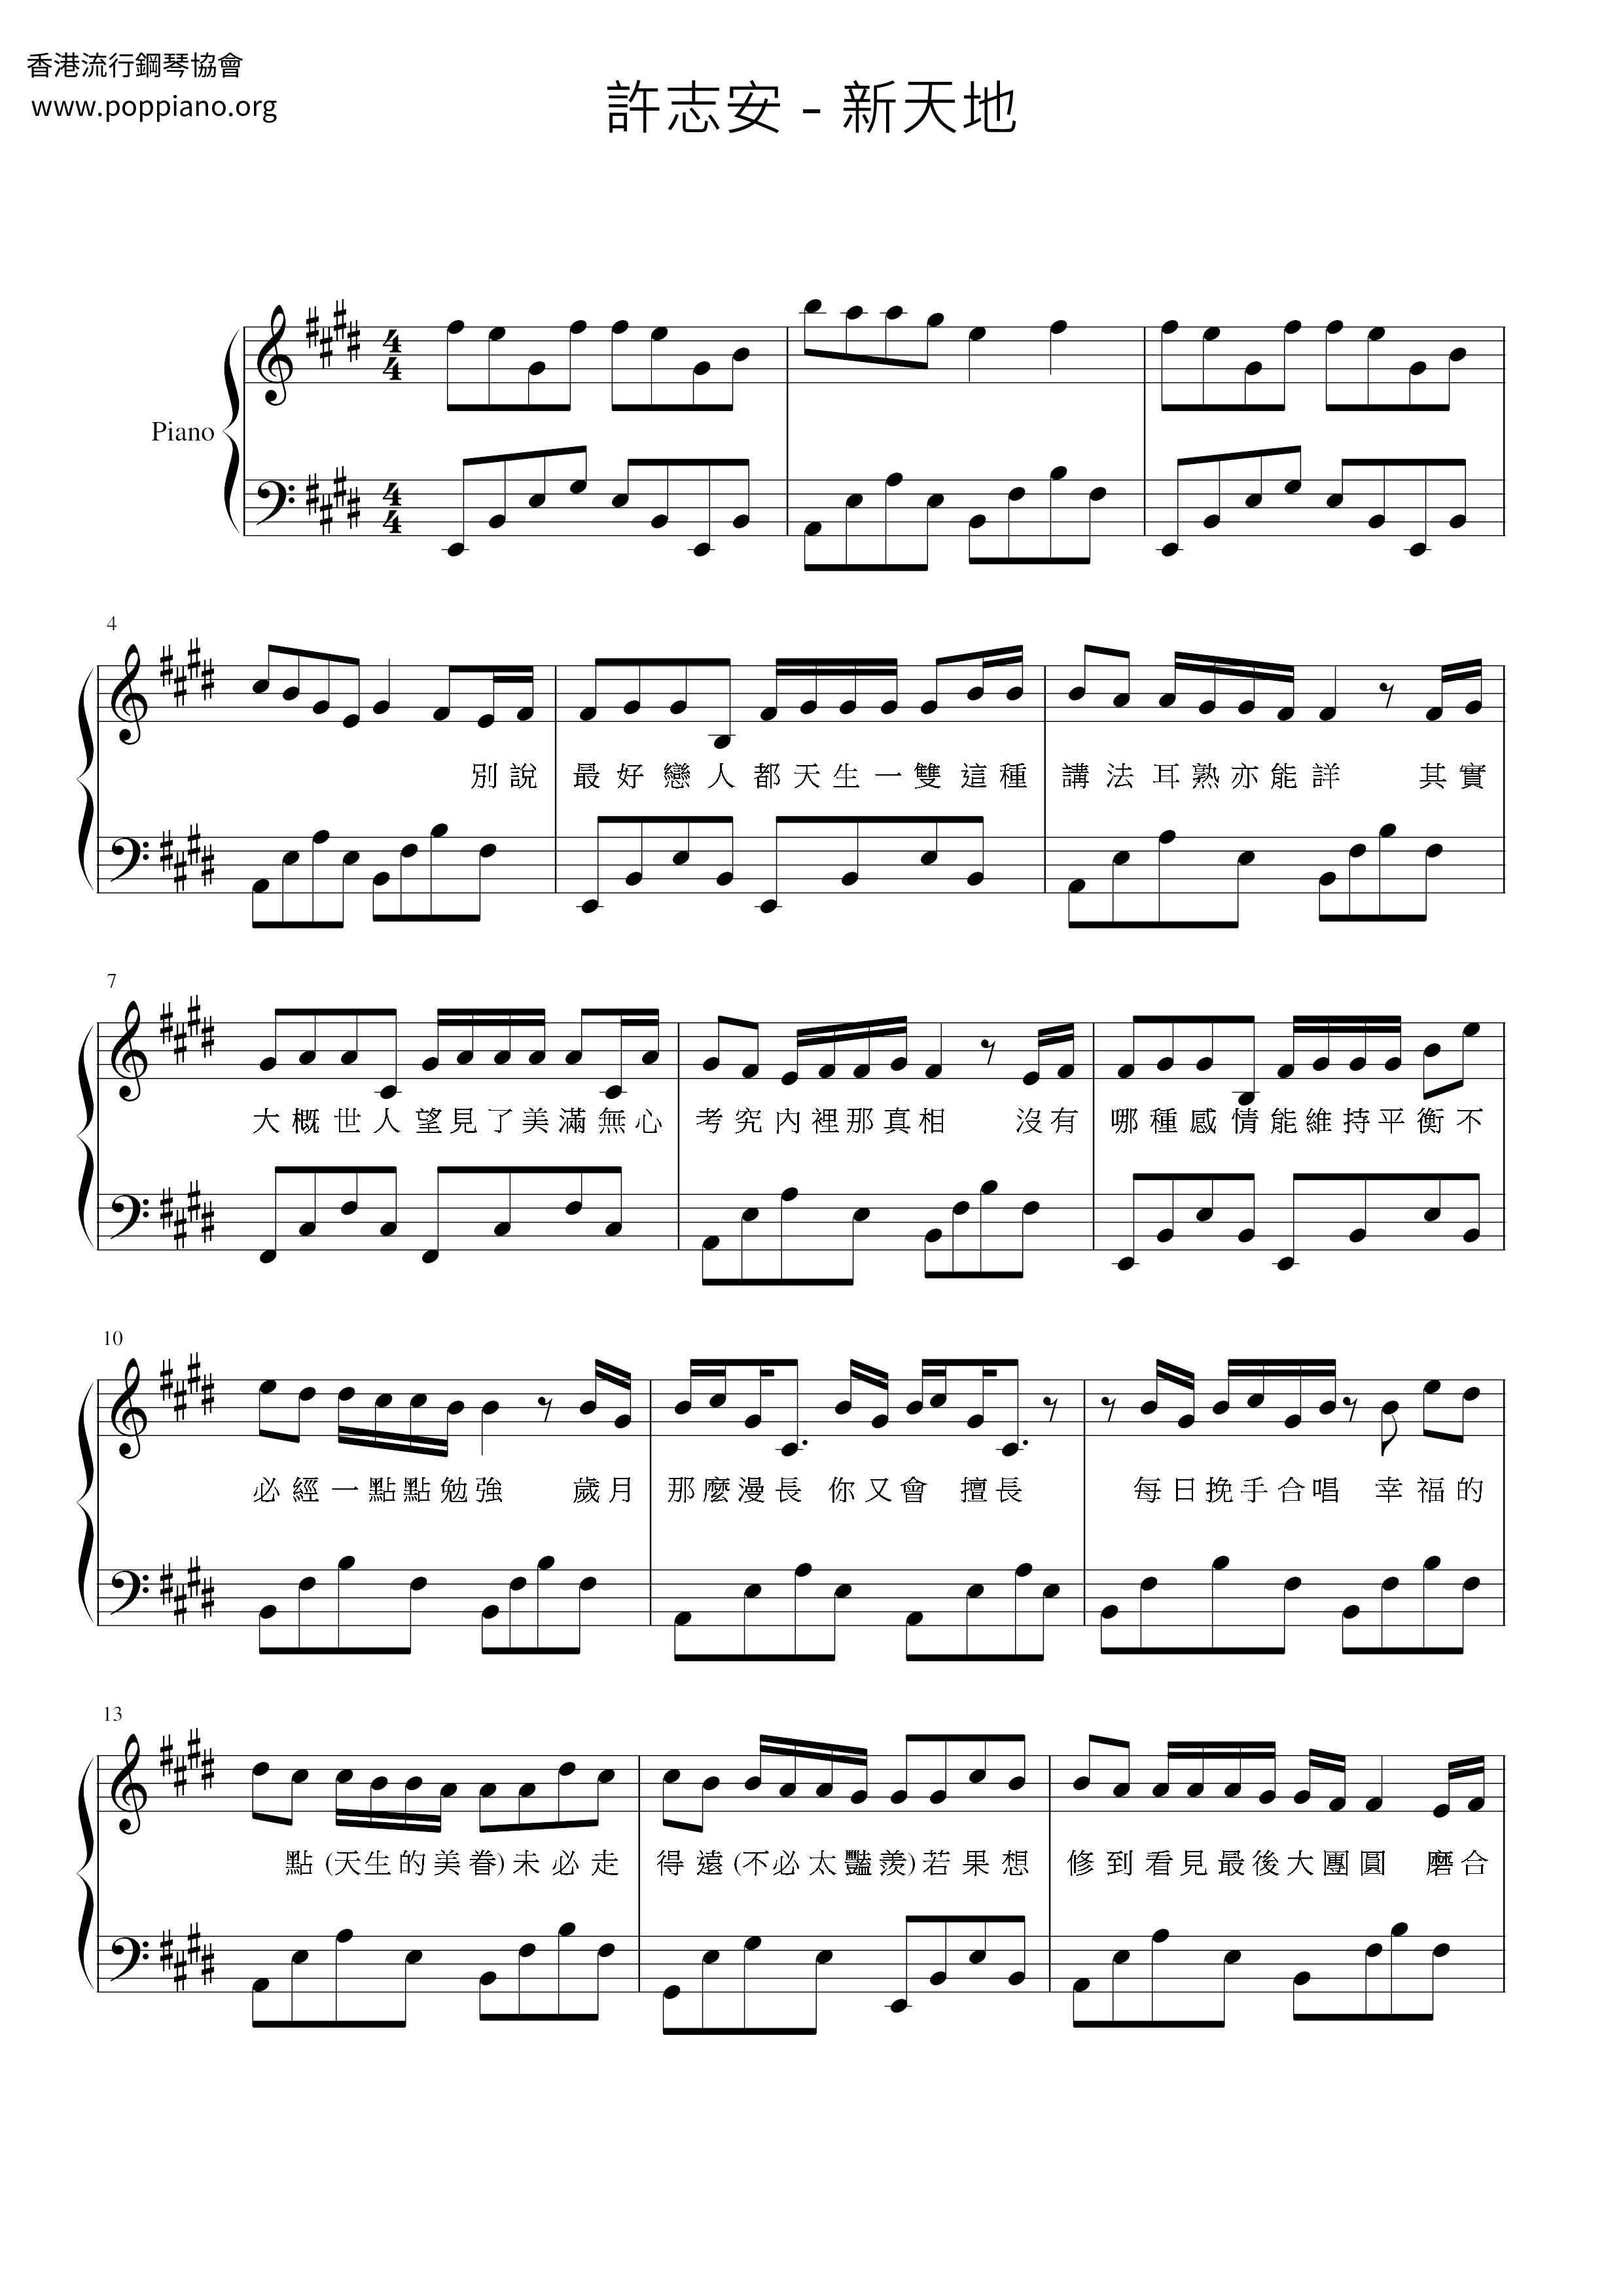 Xintiandi  Score